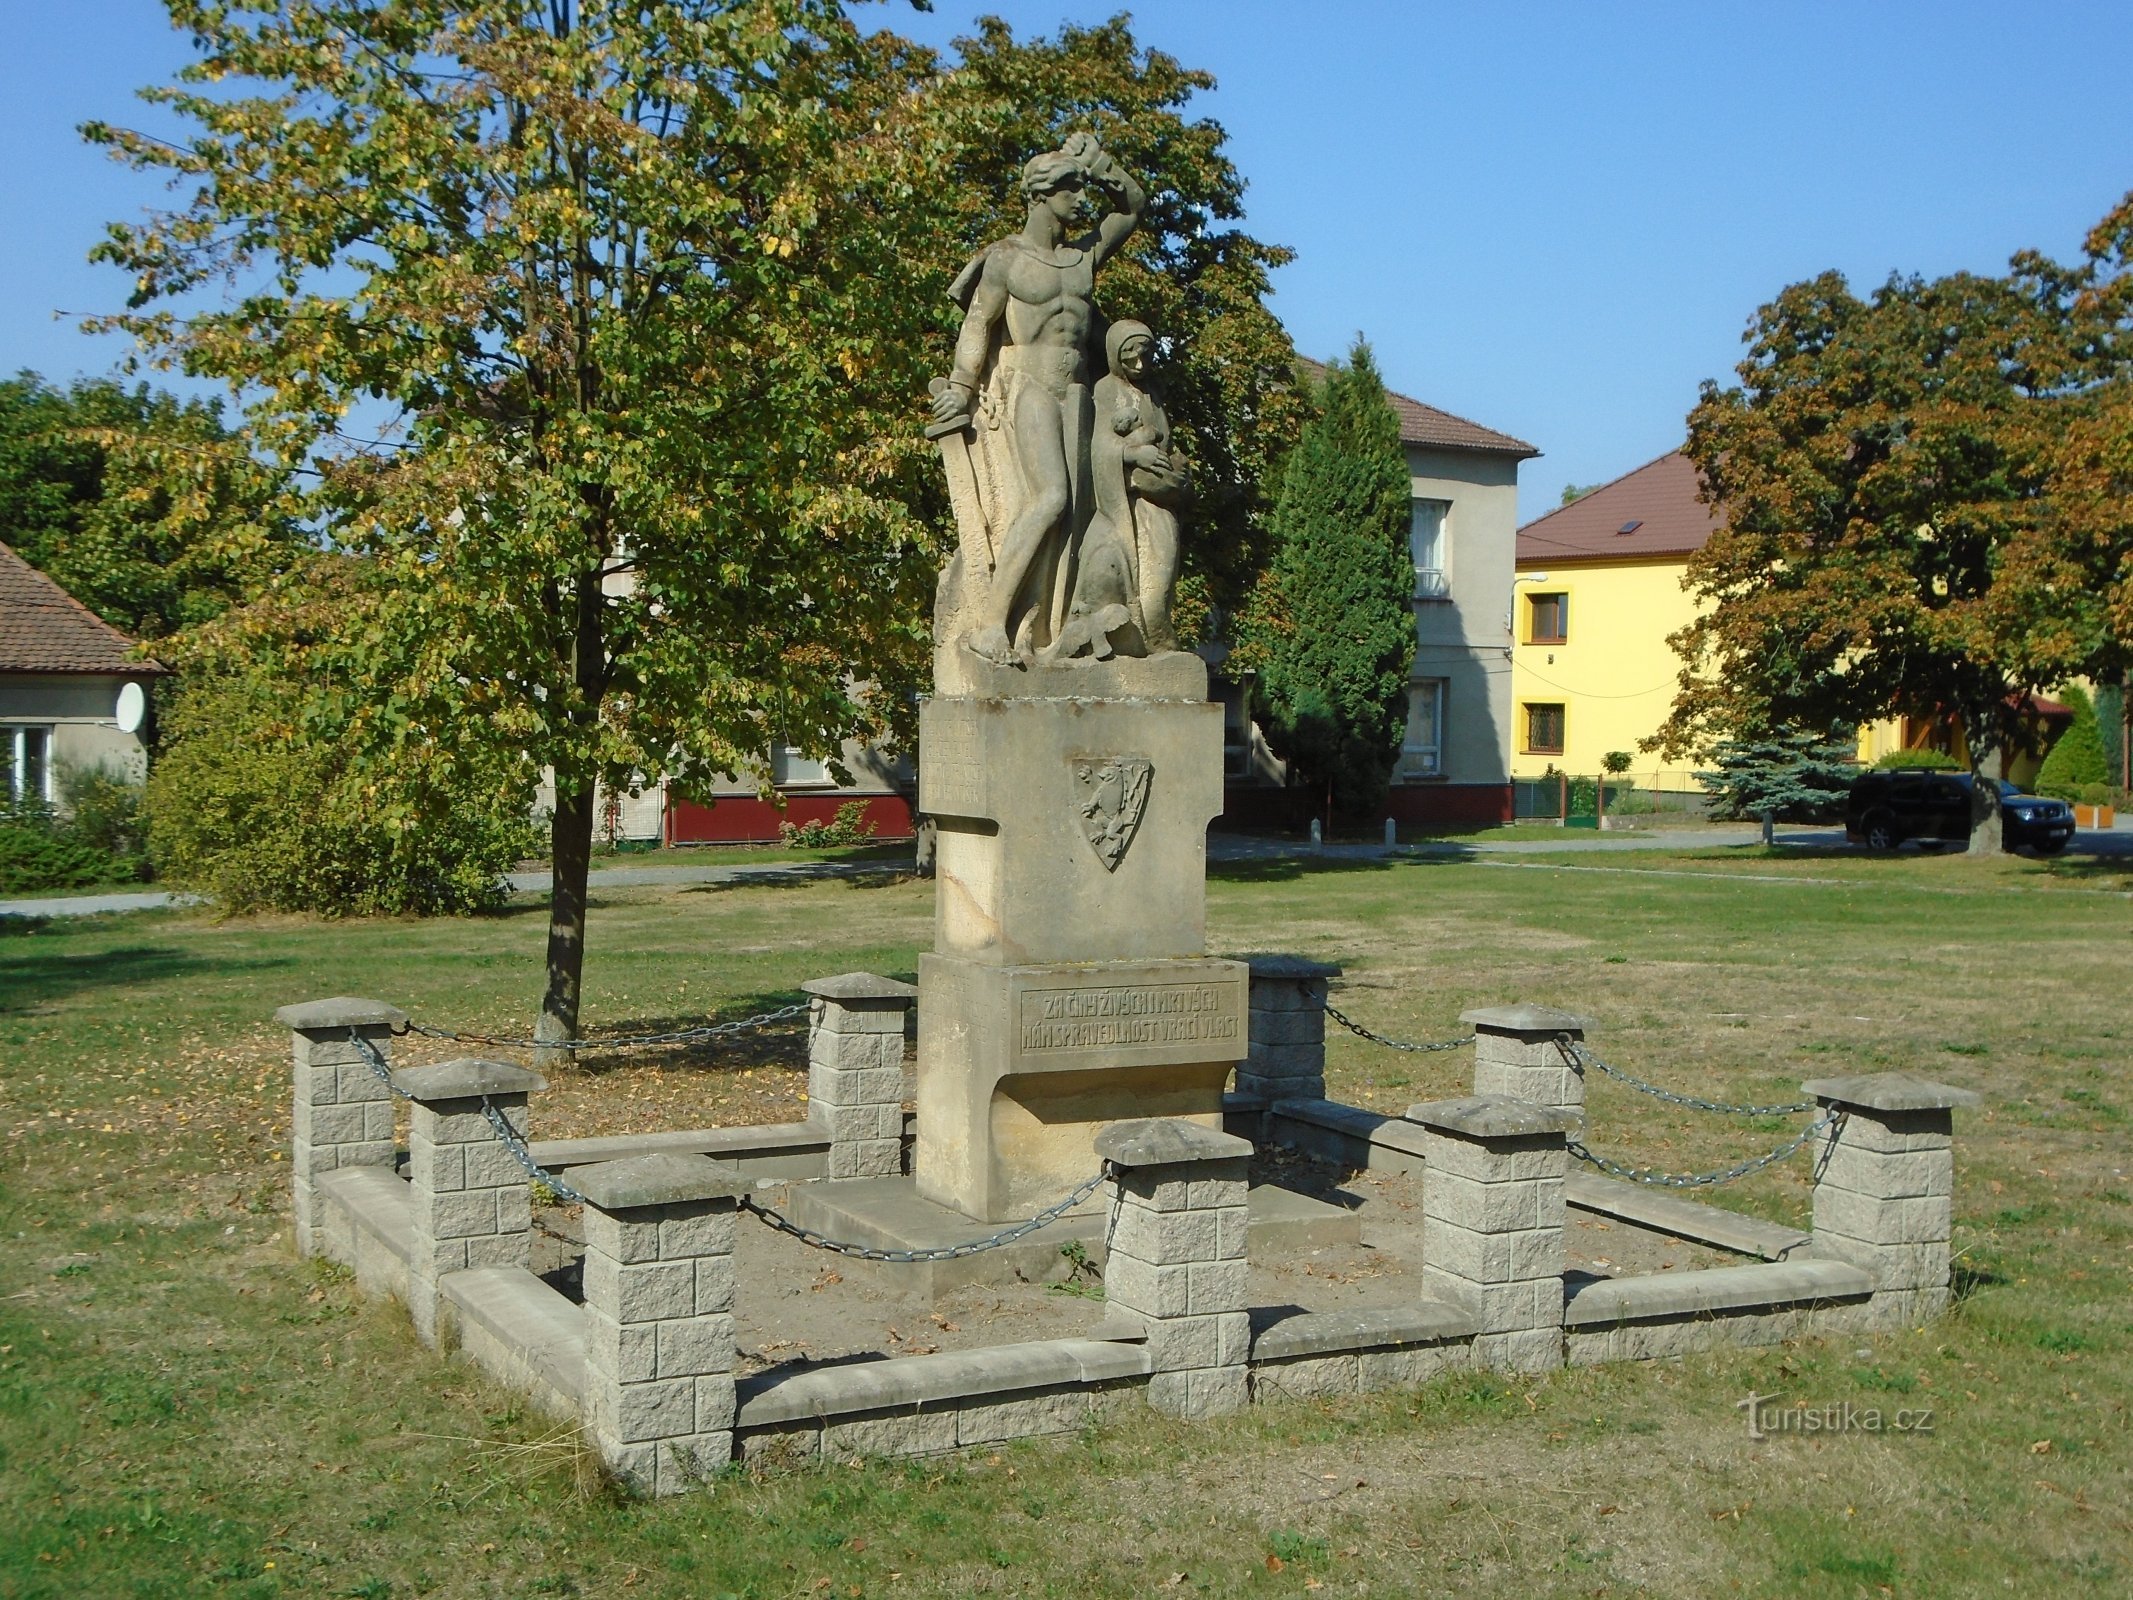 Monumentul celor care au murit în Primul Război Mondial (Vysoké Chvojno)